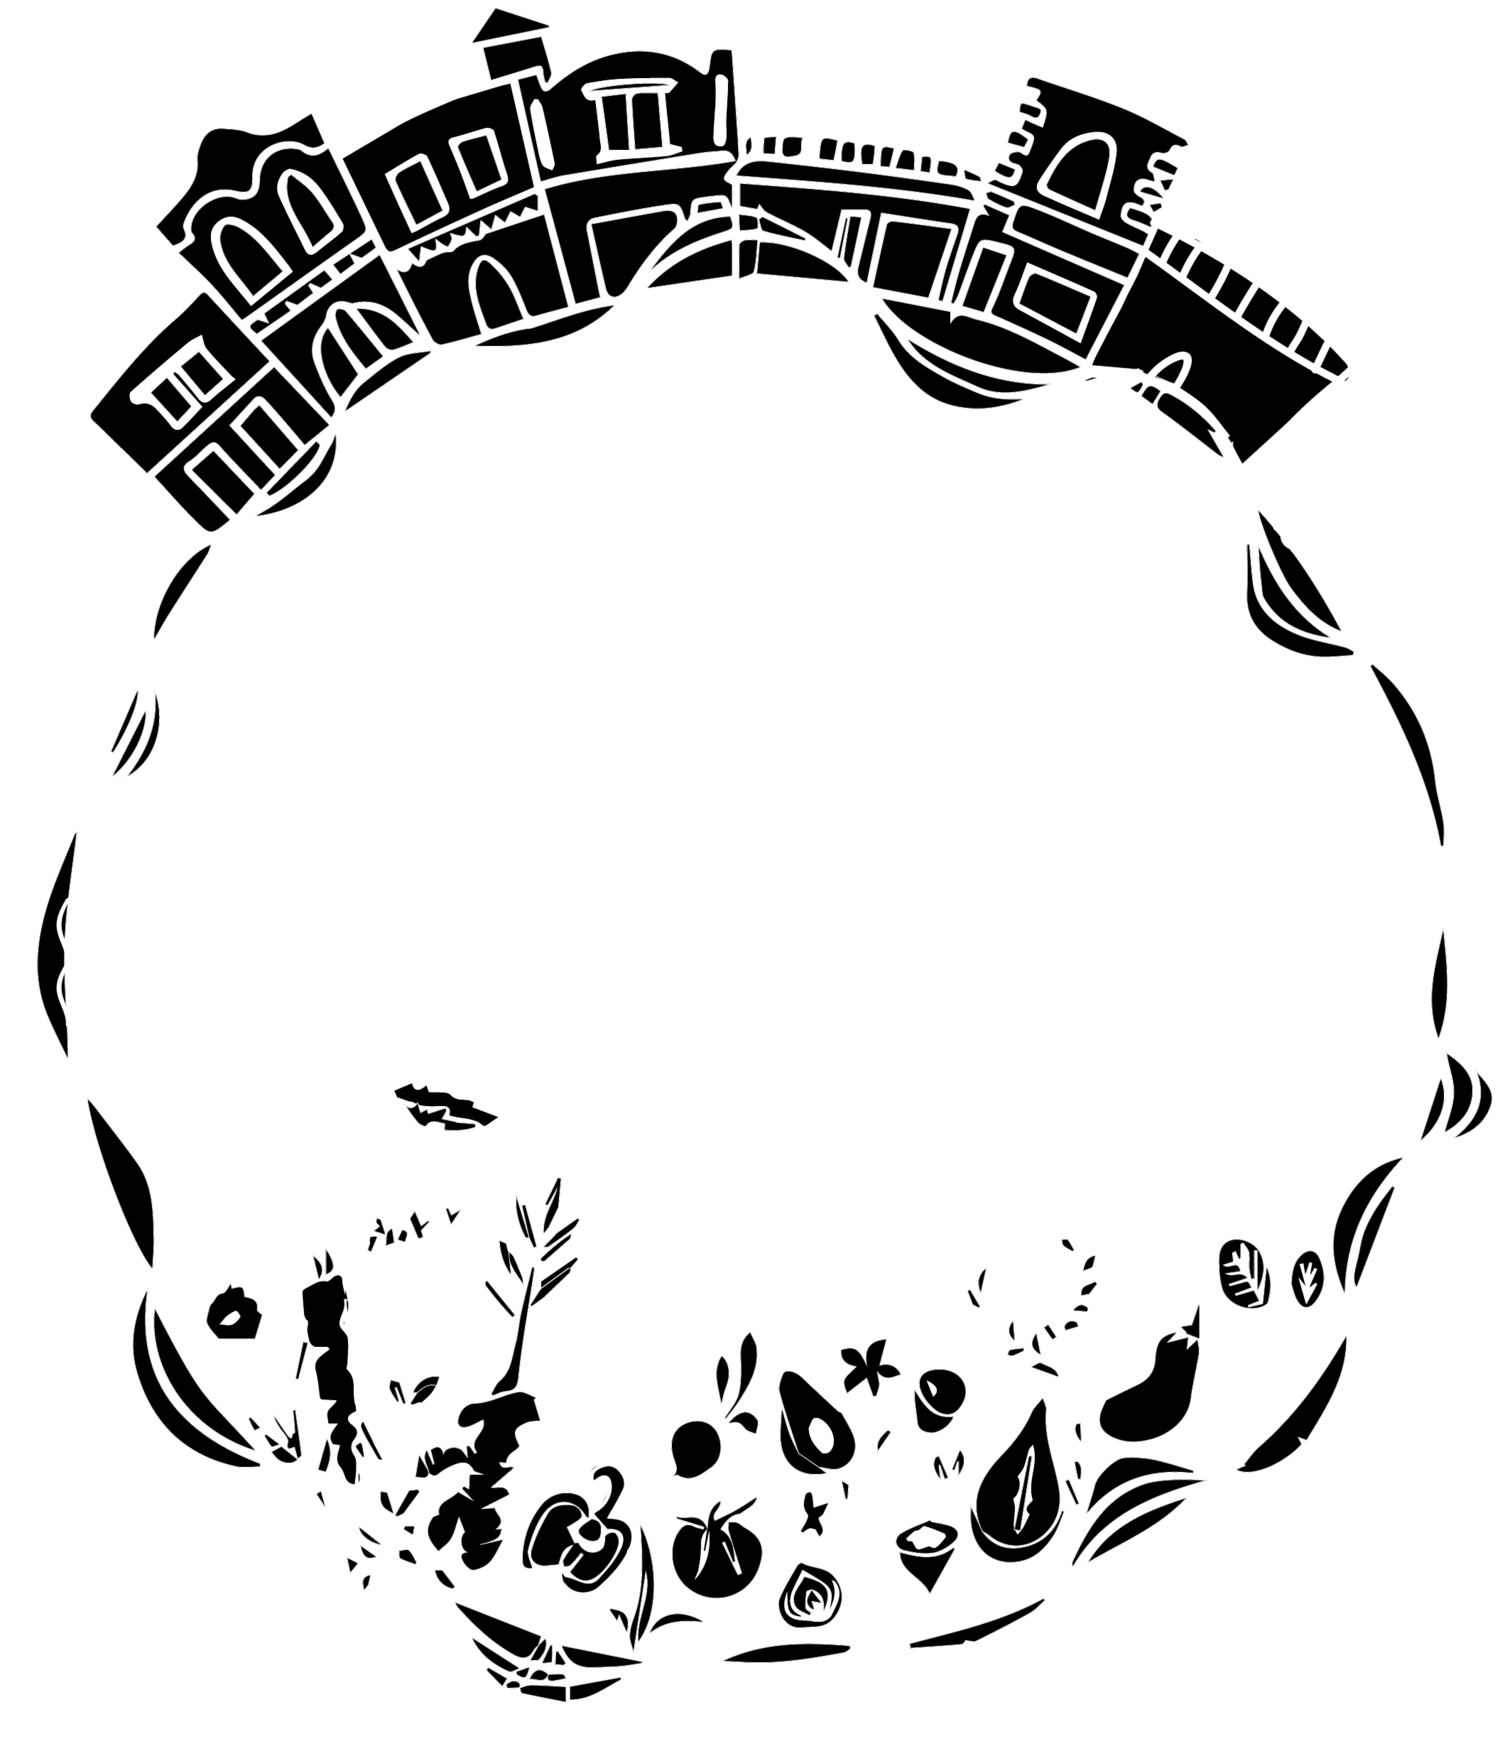 Cirque du Soil